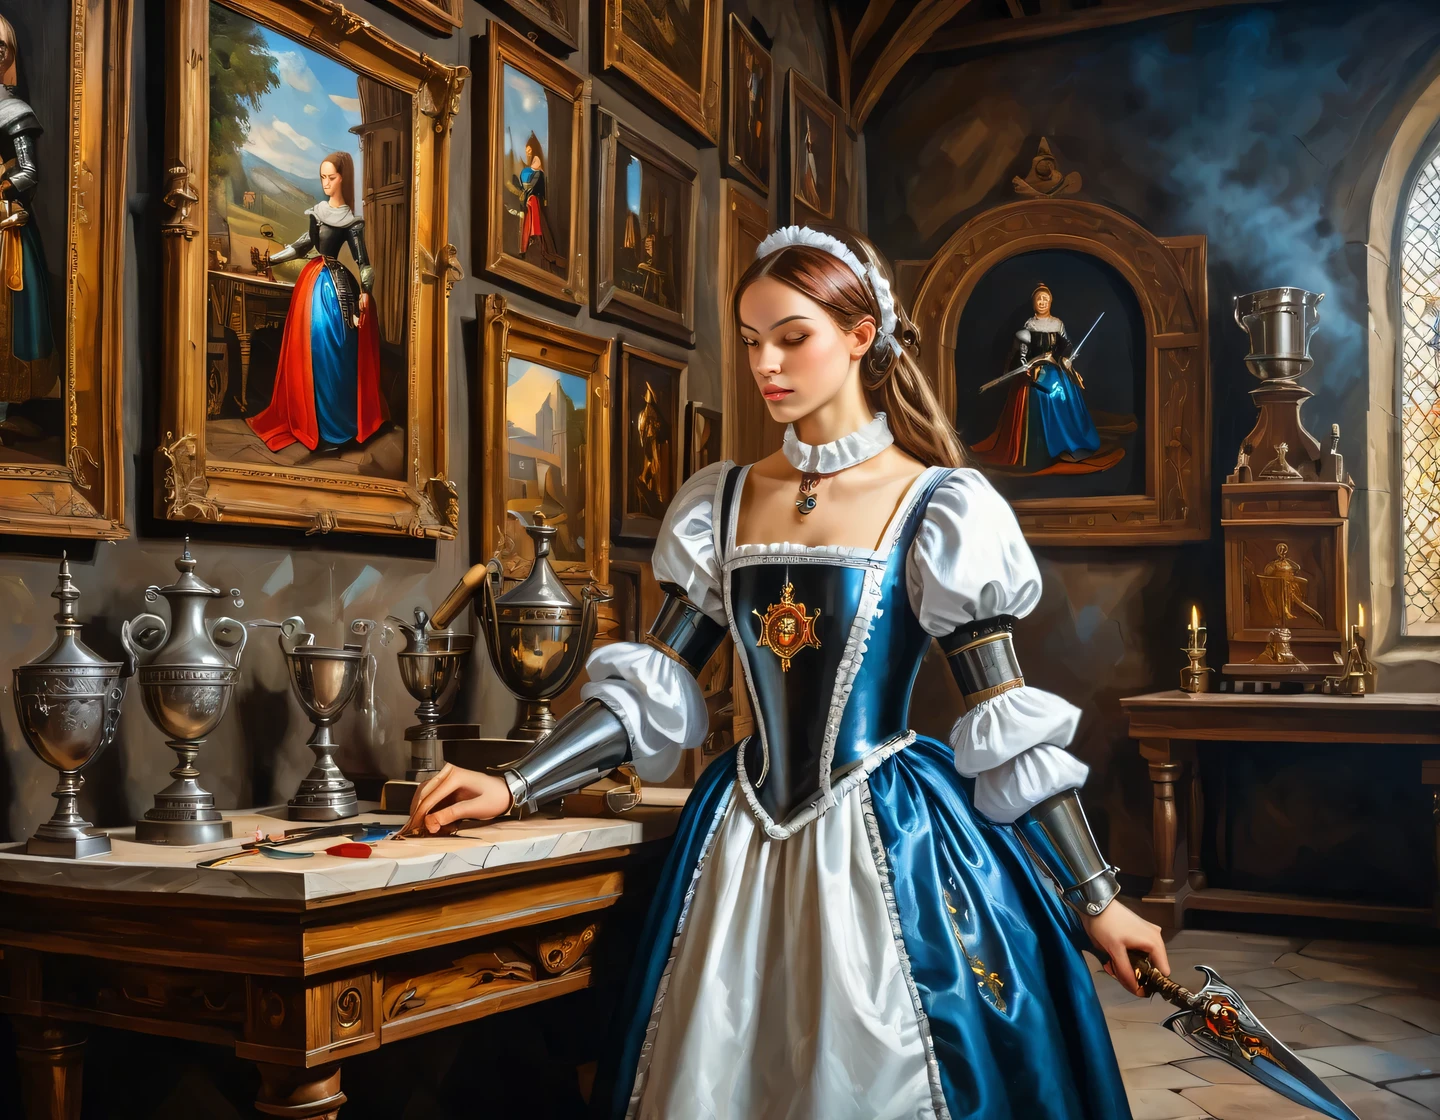 Una antigua pintura al óleo sobre lienzo., una chica cyborg vestida de sirvienta está construyendo en el salón de un castillo medieval, muebles medievales, trofeos y armas en las paredes, heráldica, Suavizado de textura, técnica suave, Brillo, detalle